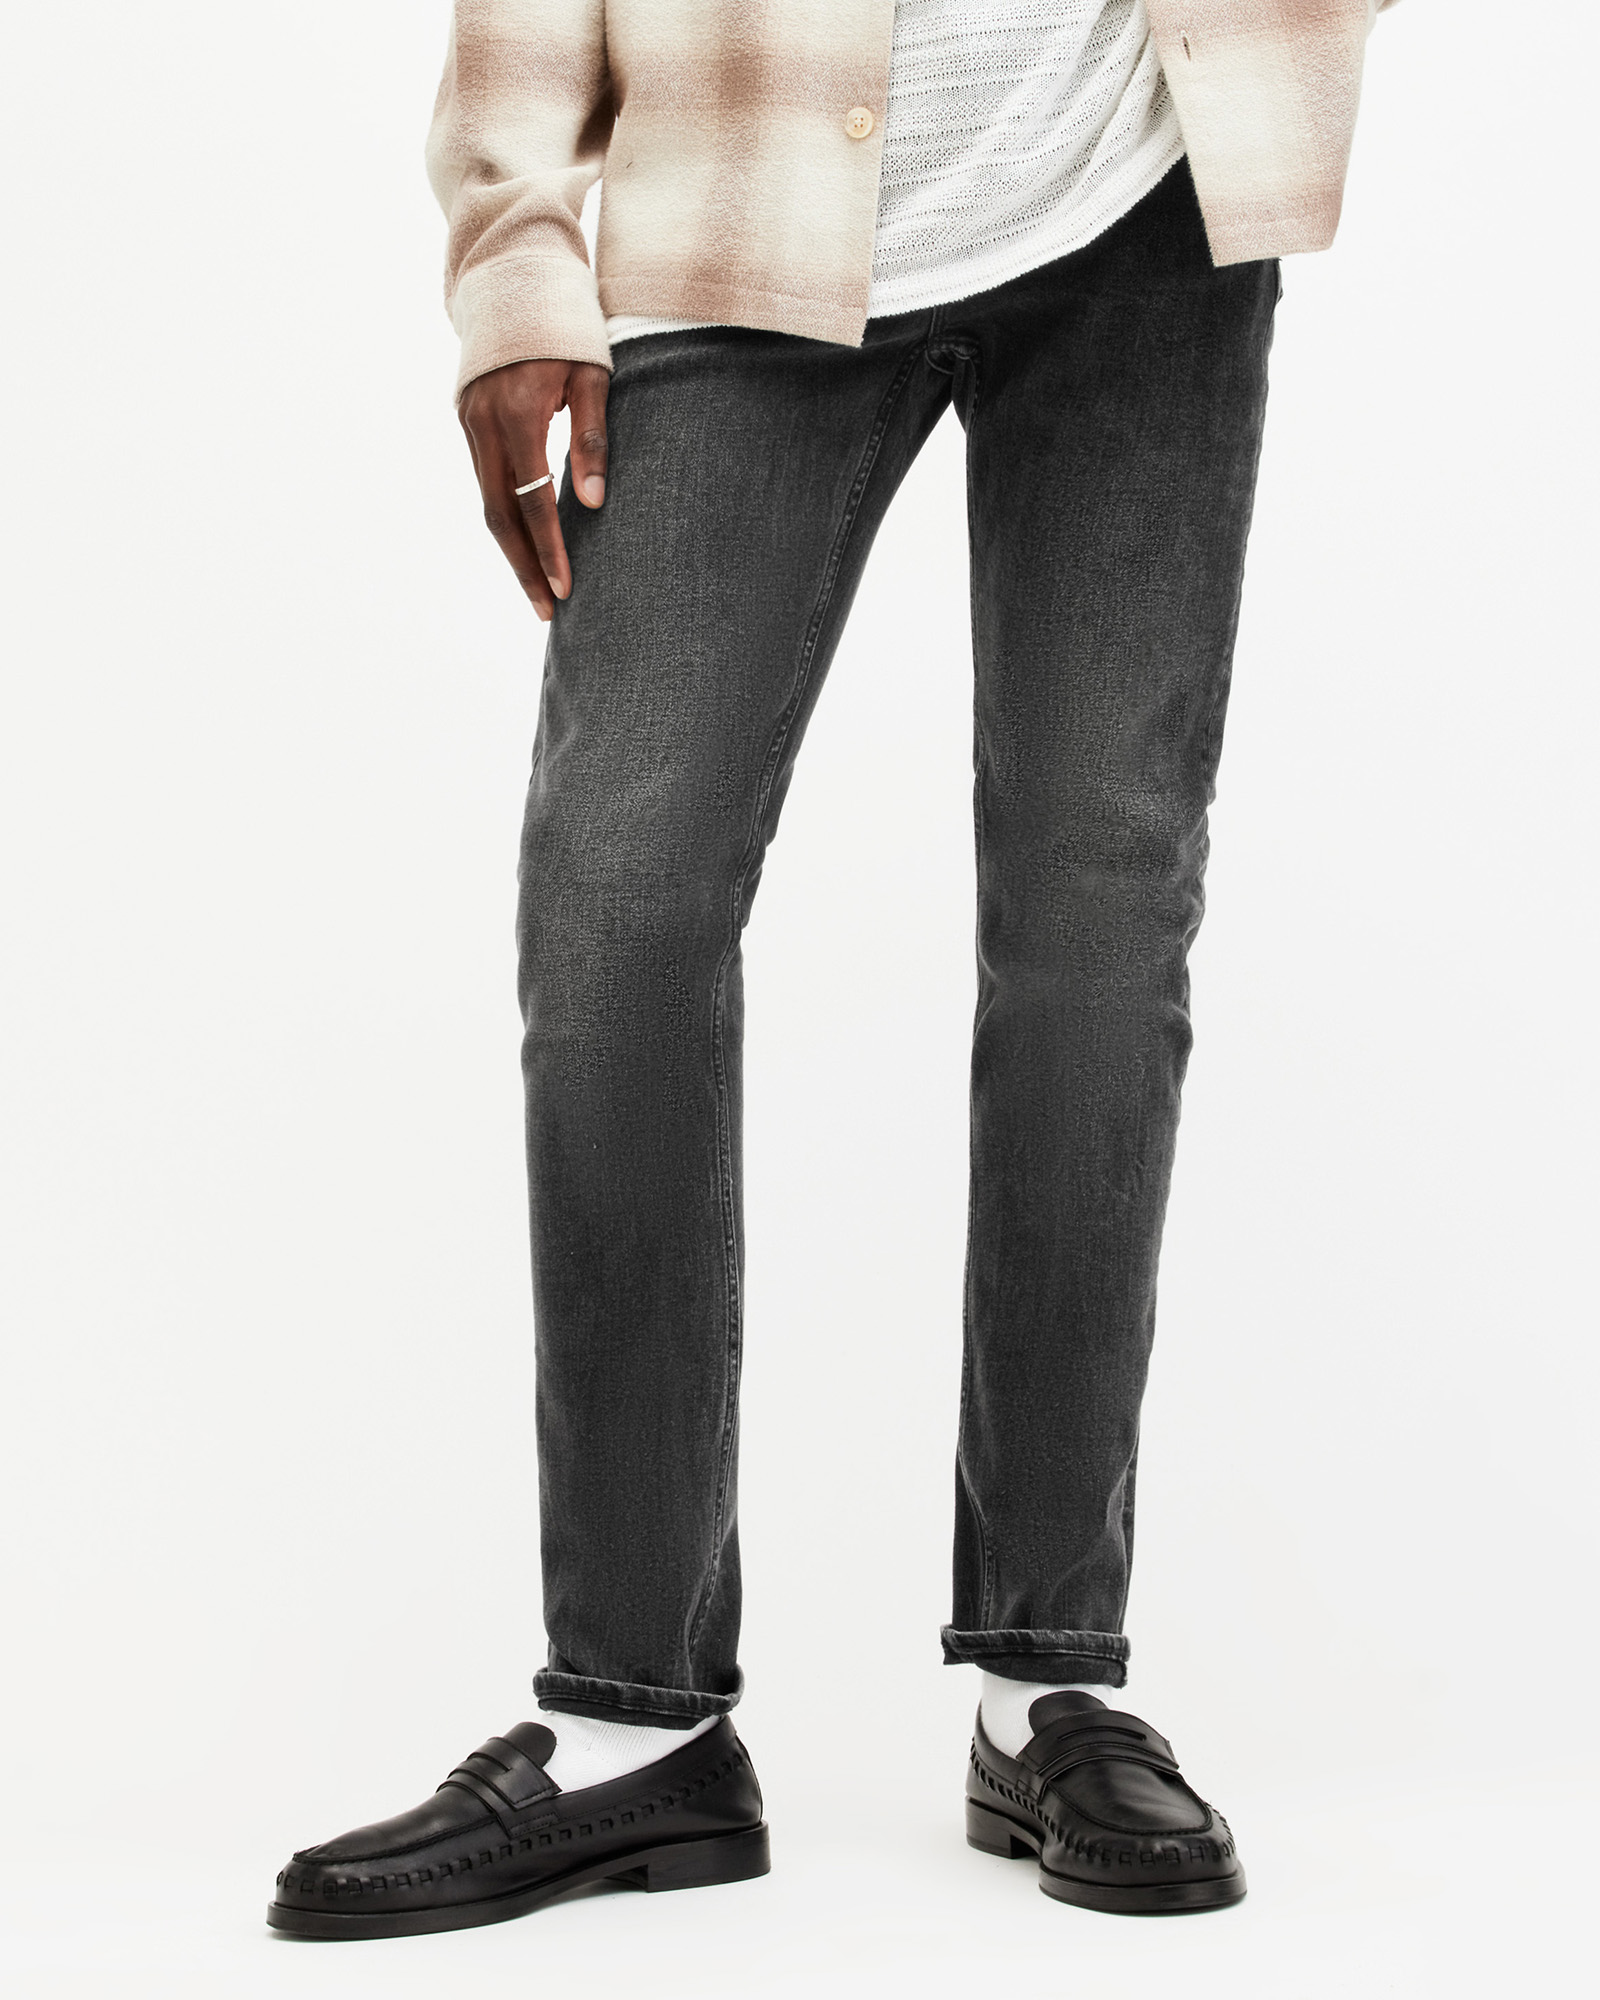 AllSaints Men's Cotton Traditional Cigarette Skinny Jeans, Black, Size: 32/L30